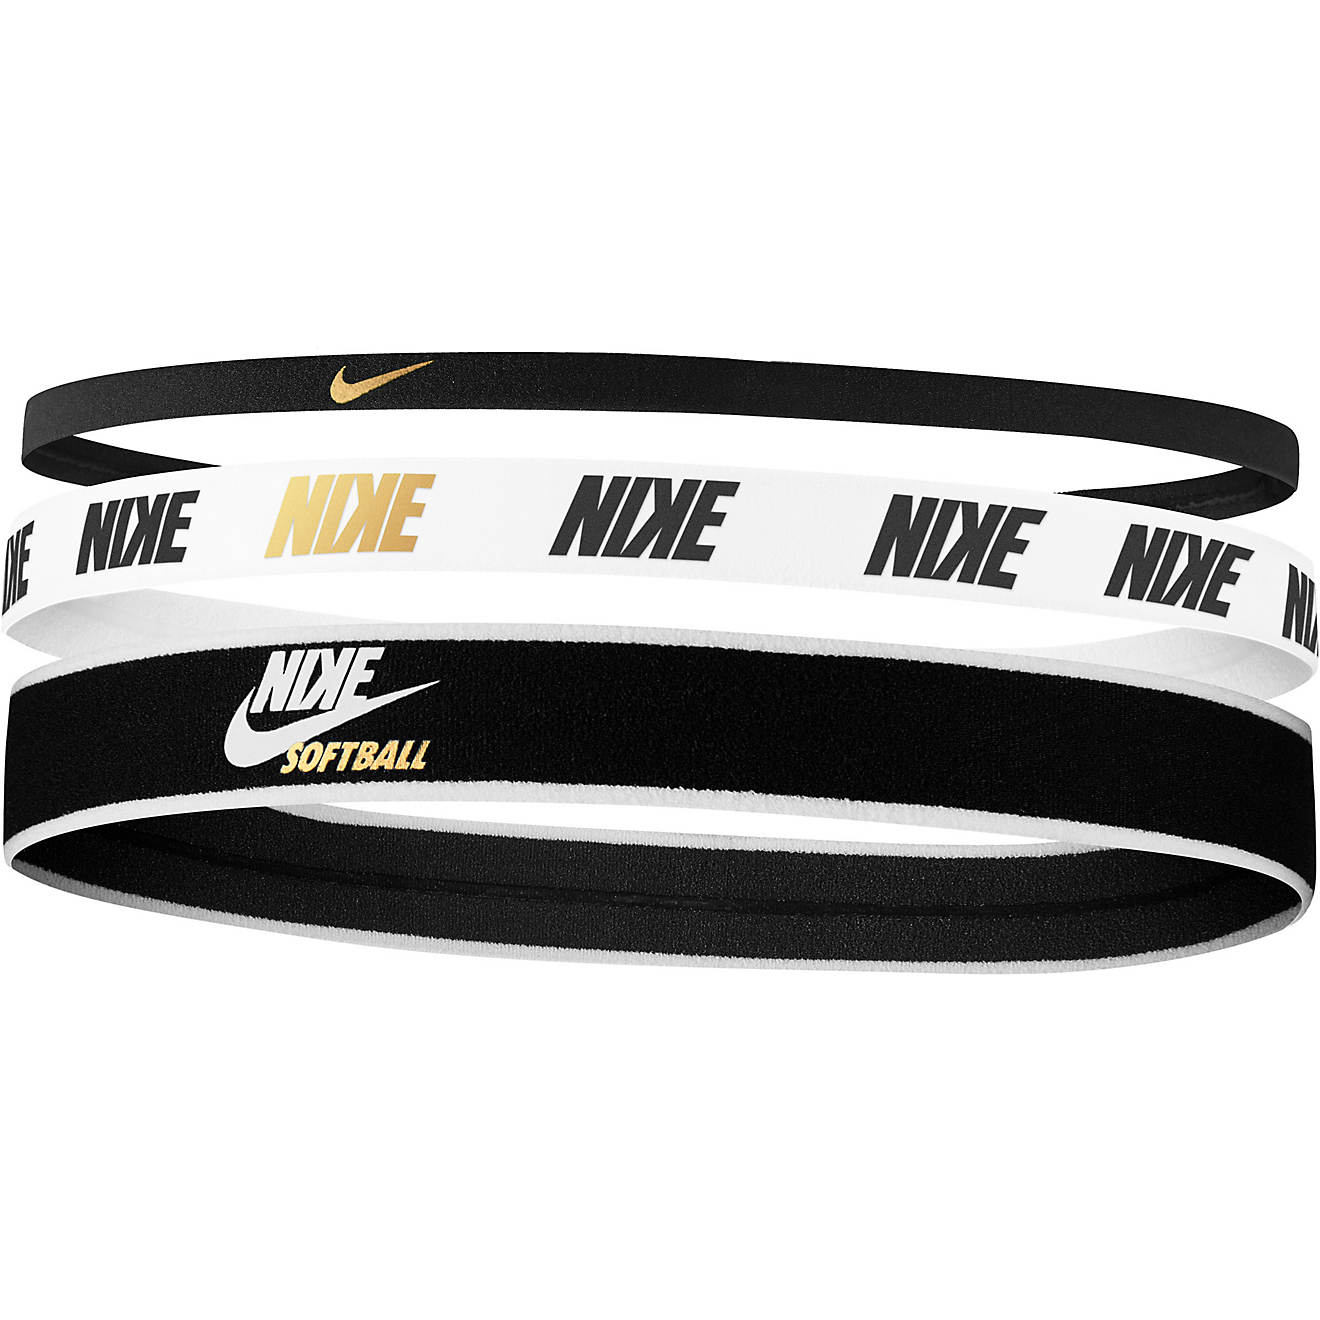 Nike Women's Softball Mixed Width Headbands 3-Pack